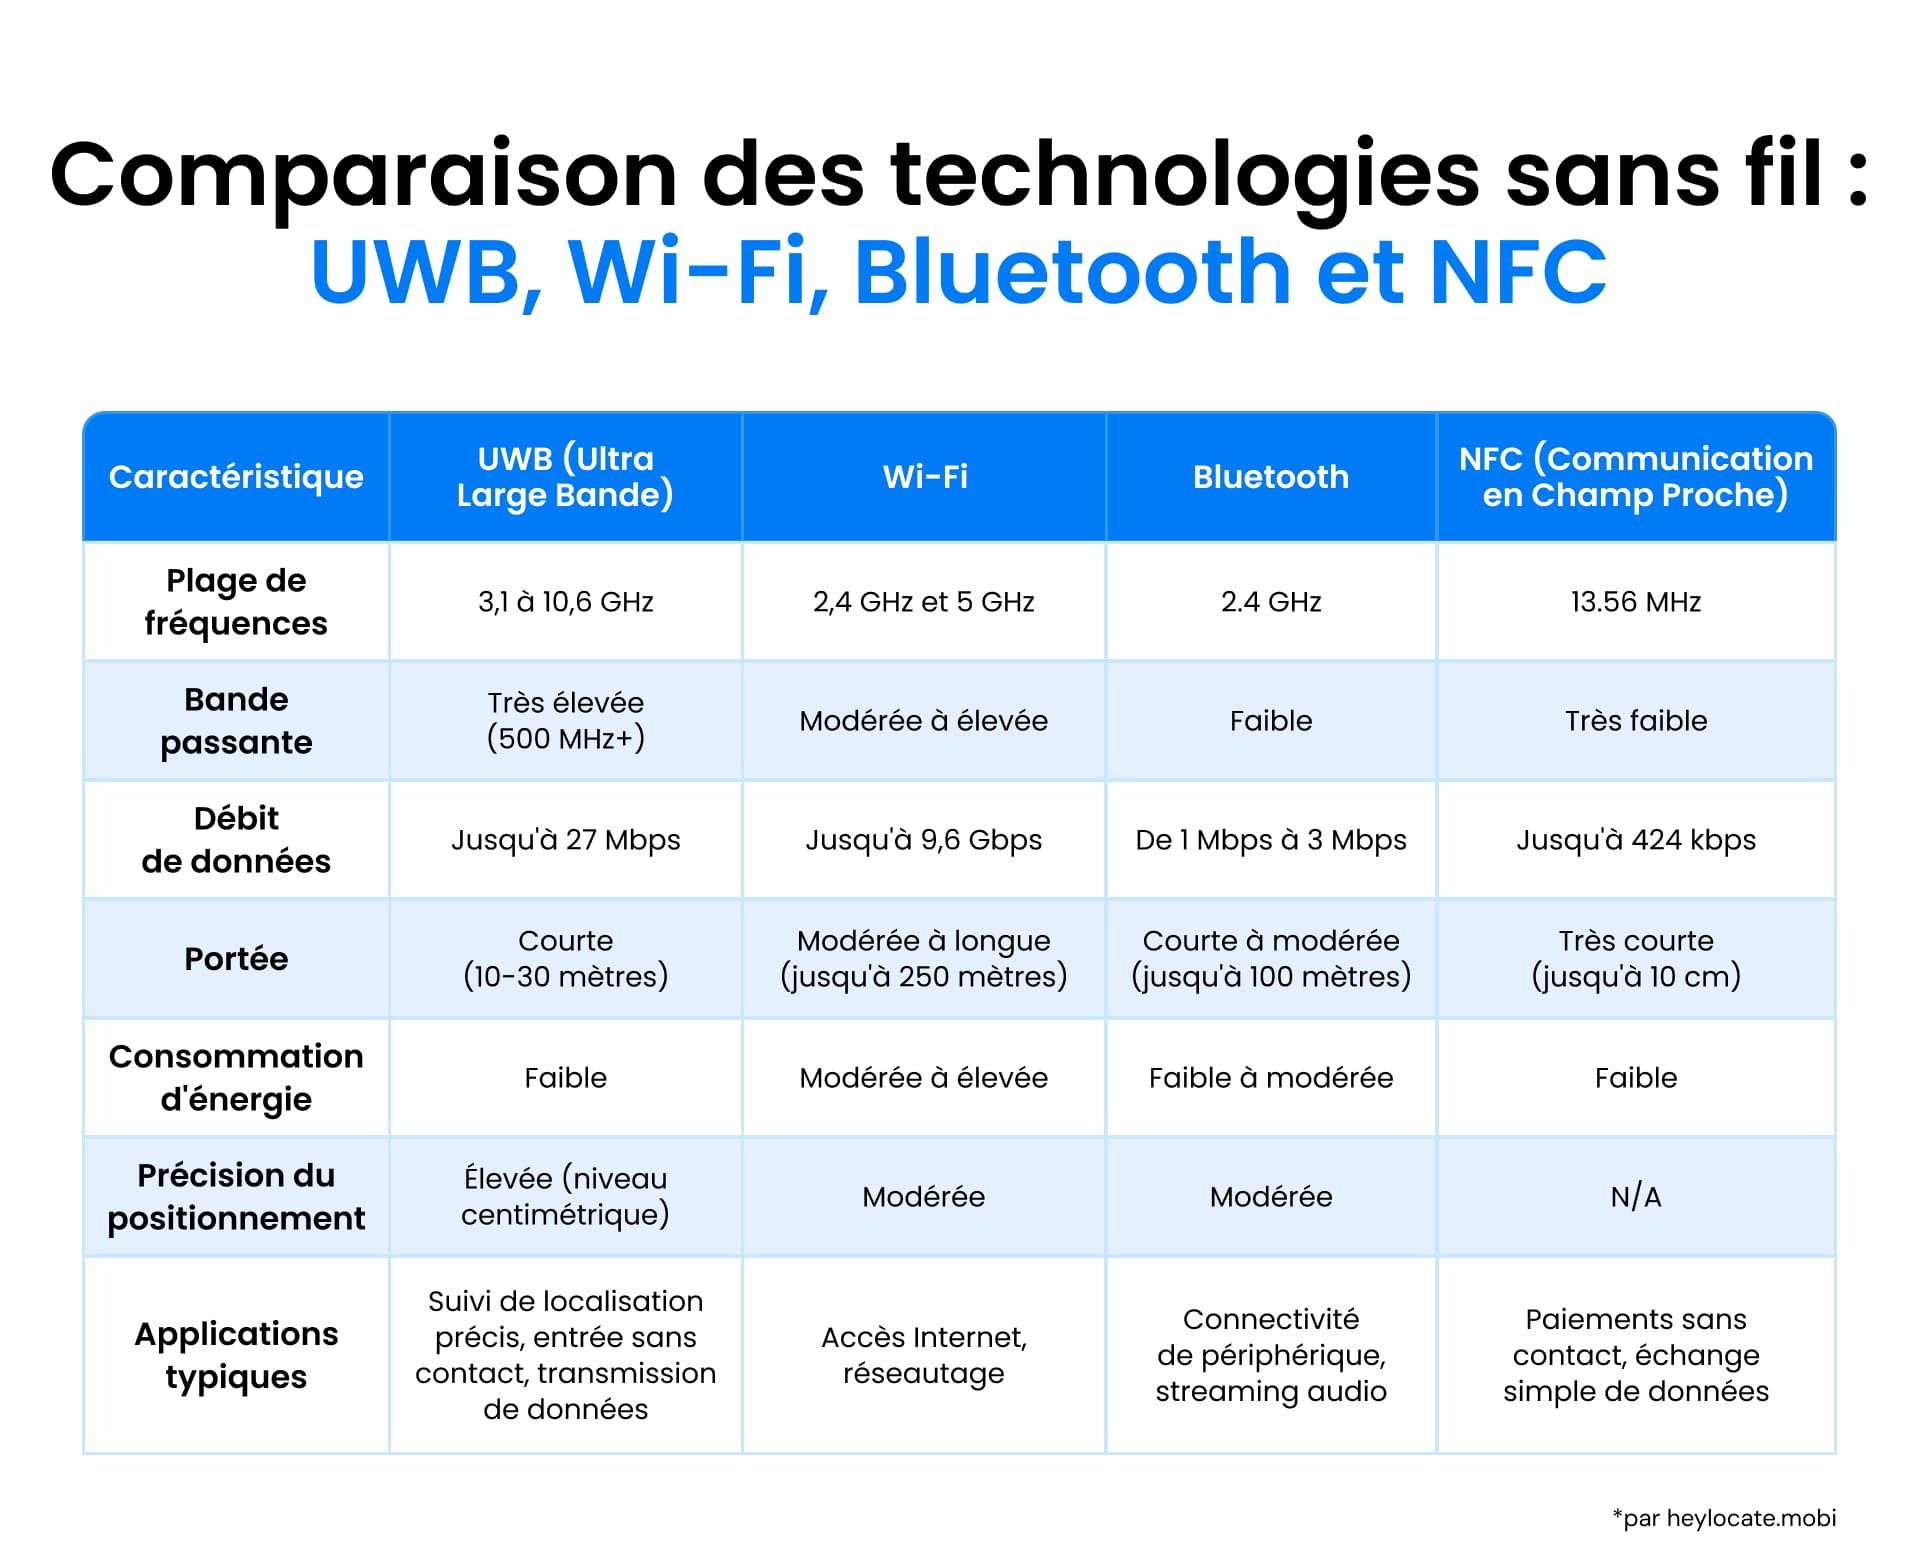 Tableau comparant les technologies UWB, Wi-Fi, Bluetooth et NFC en fonction de la fréquence, de la largeur de bande, du débit de données, de la portée, de la consommation d'énergie, de la précision du positionnement et des applications.